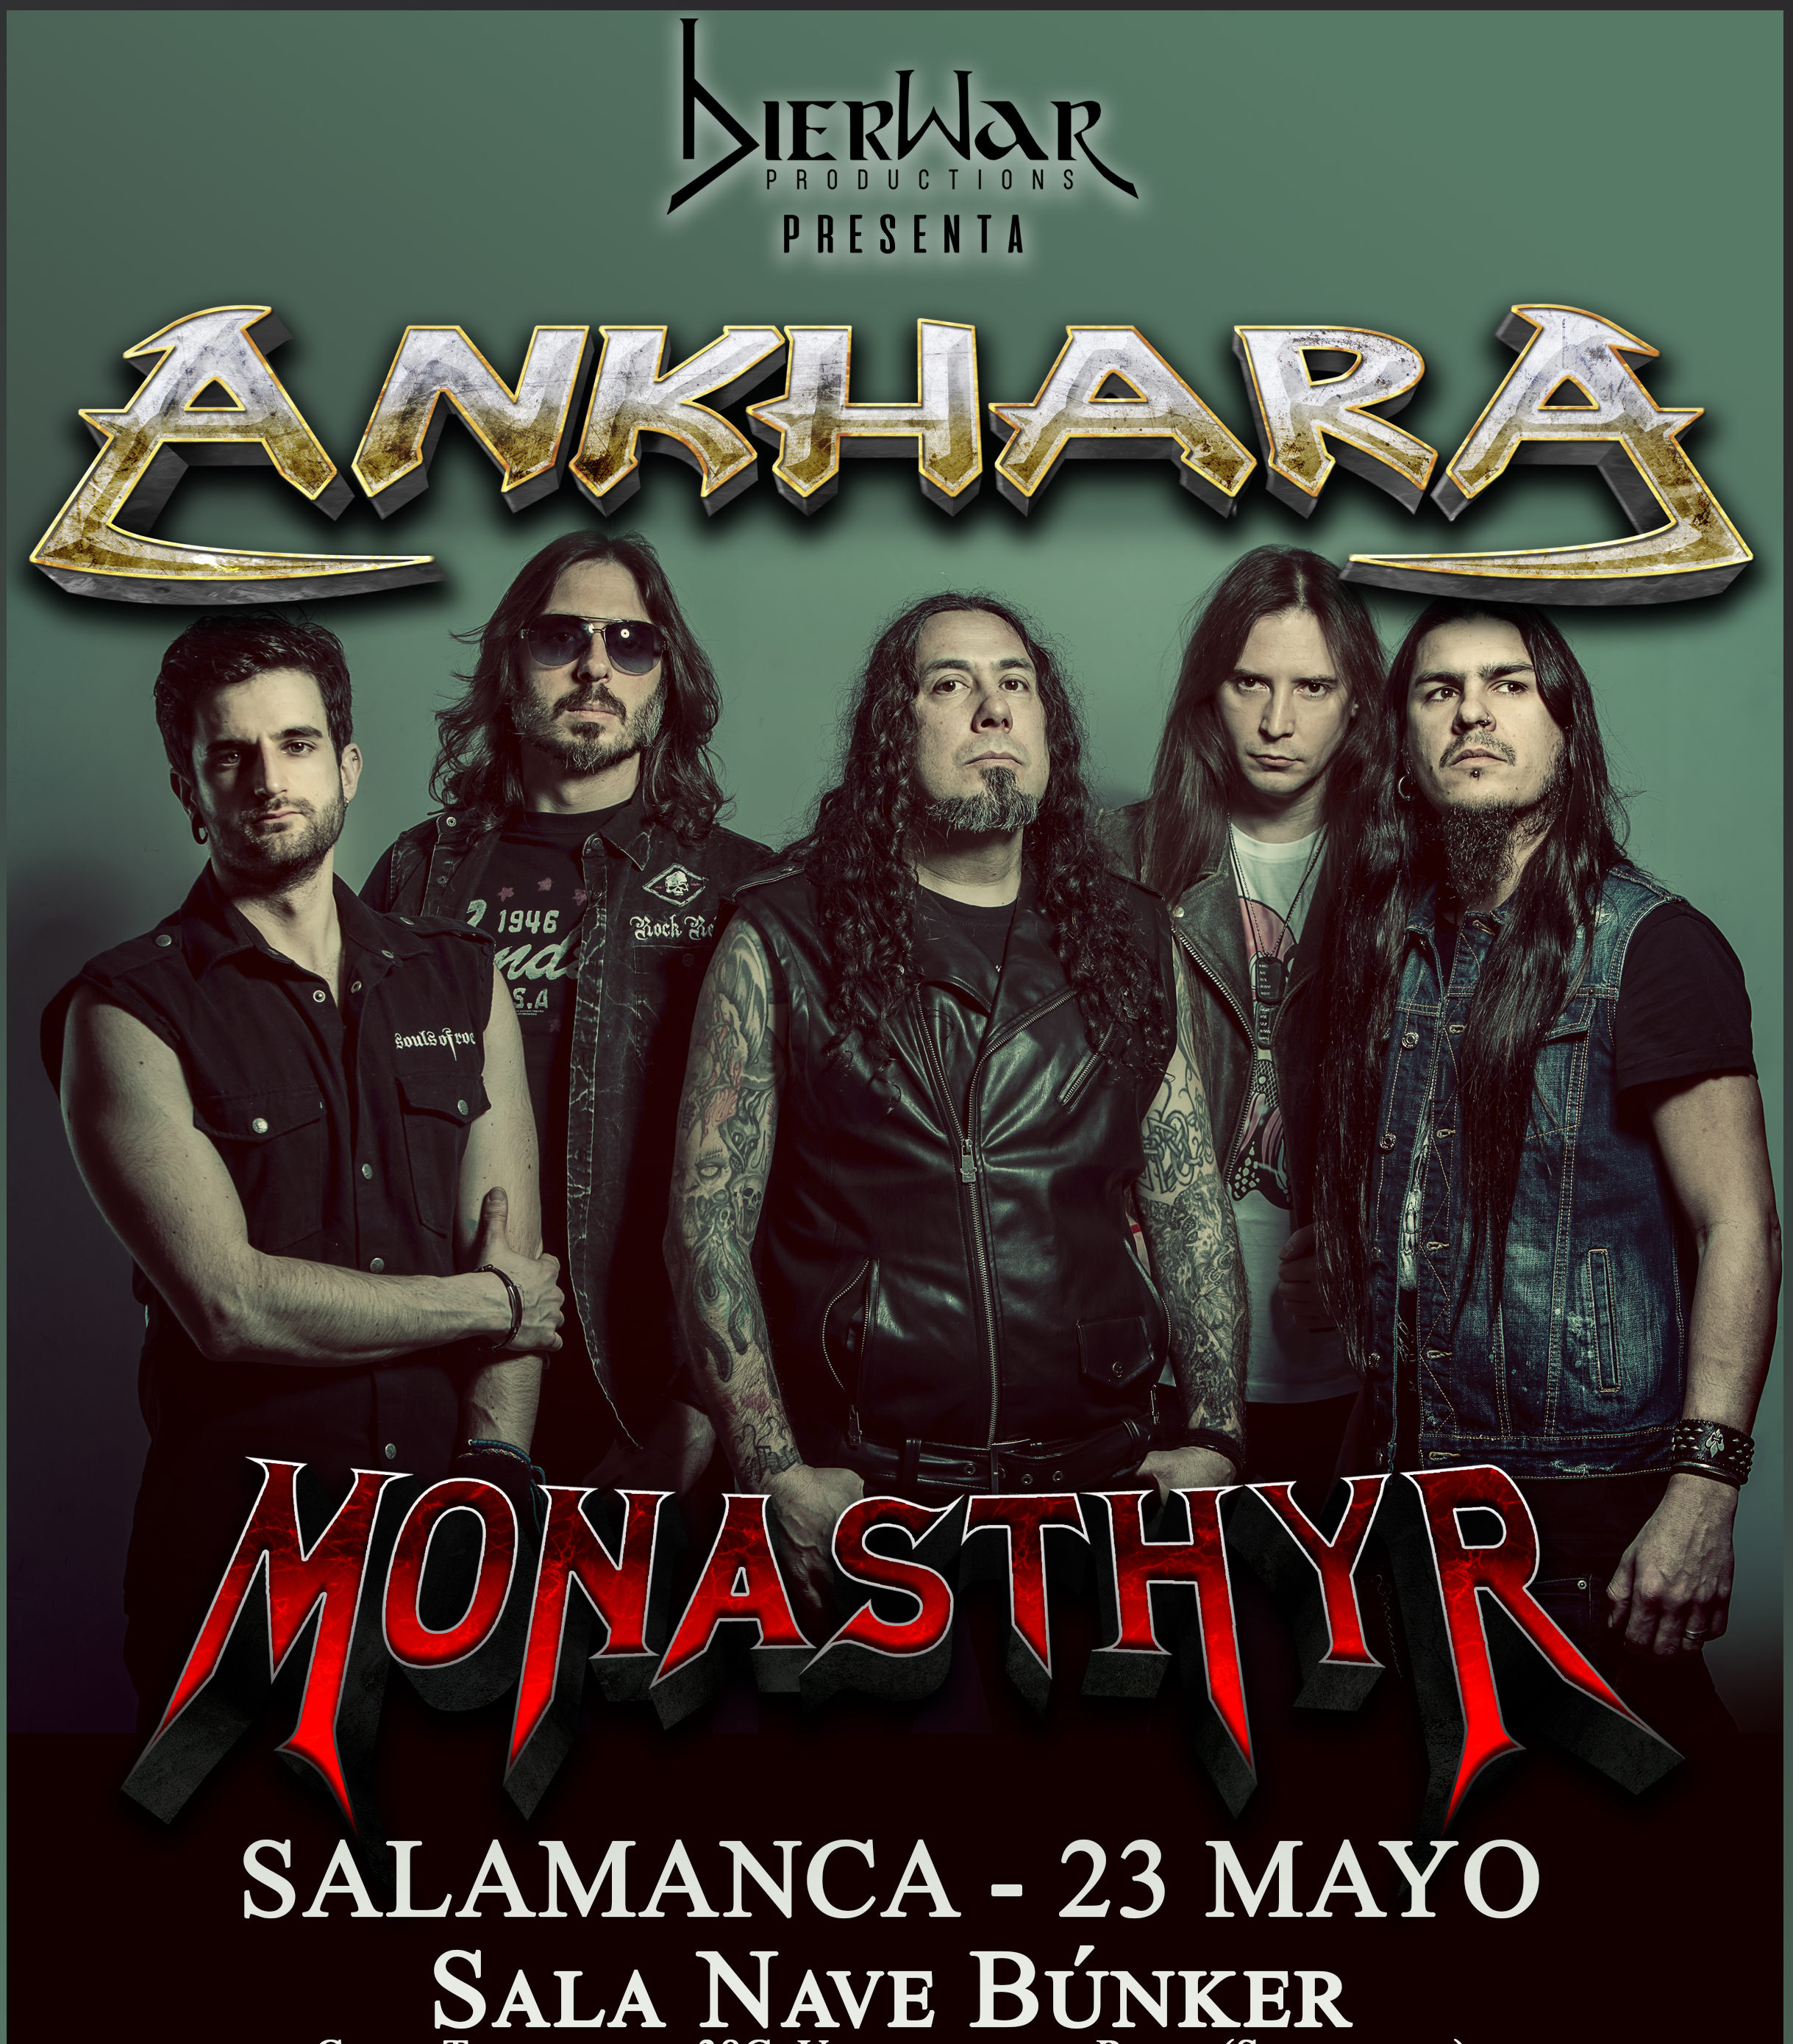 Ankhara + Monasthyr en Salamanca el 23 de mayo